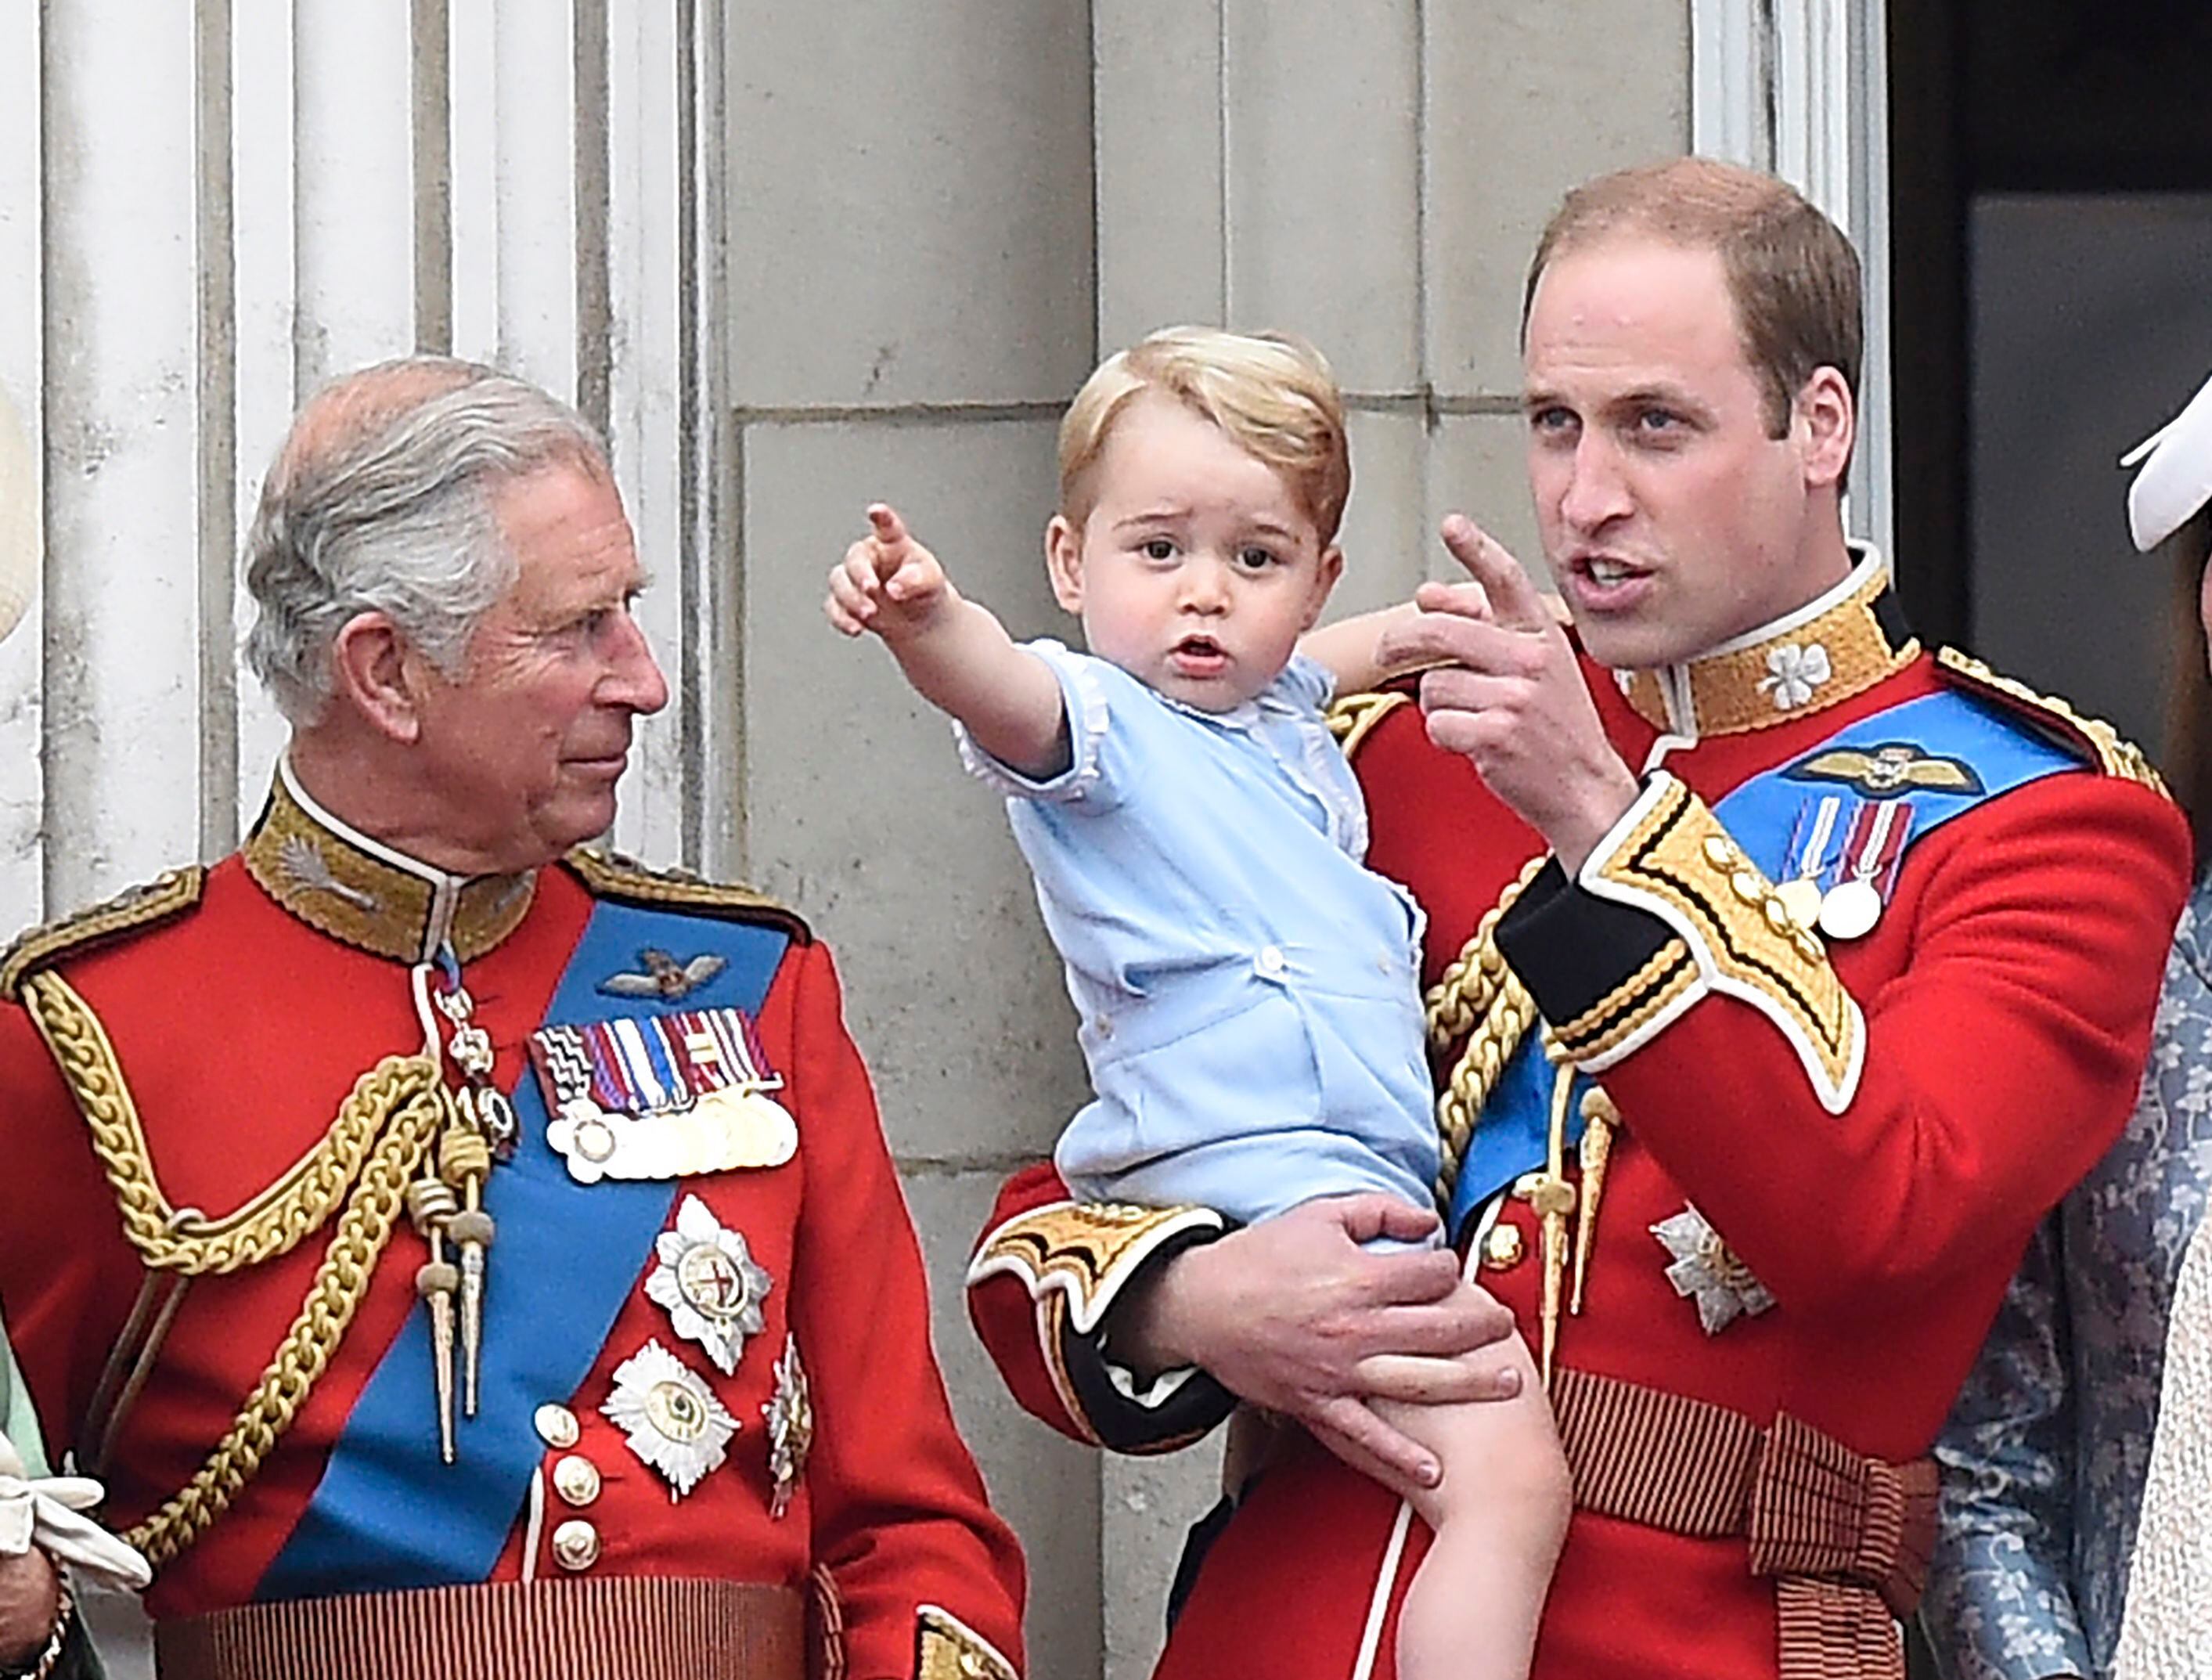 Foto de archivo del 2015 del ahora rey Carlos y sus herederos, Guillermo, el príncipe de Gales y su hijo el príncipe Jorge.